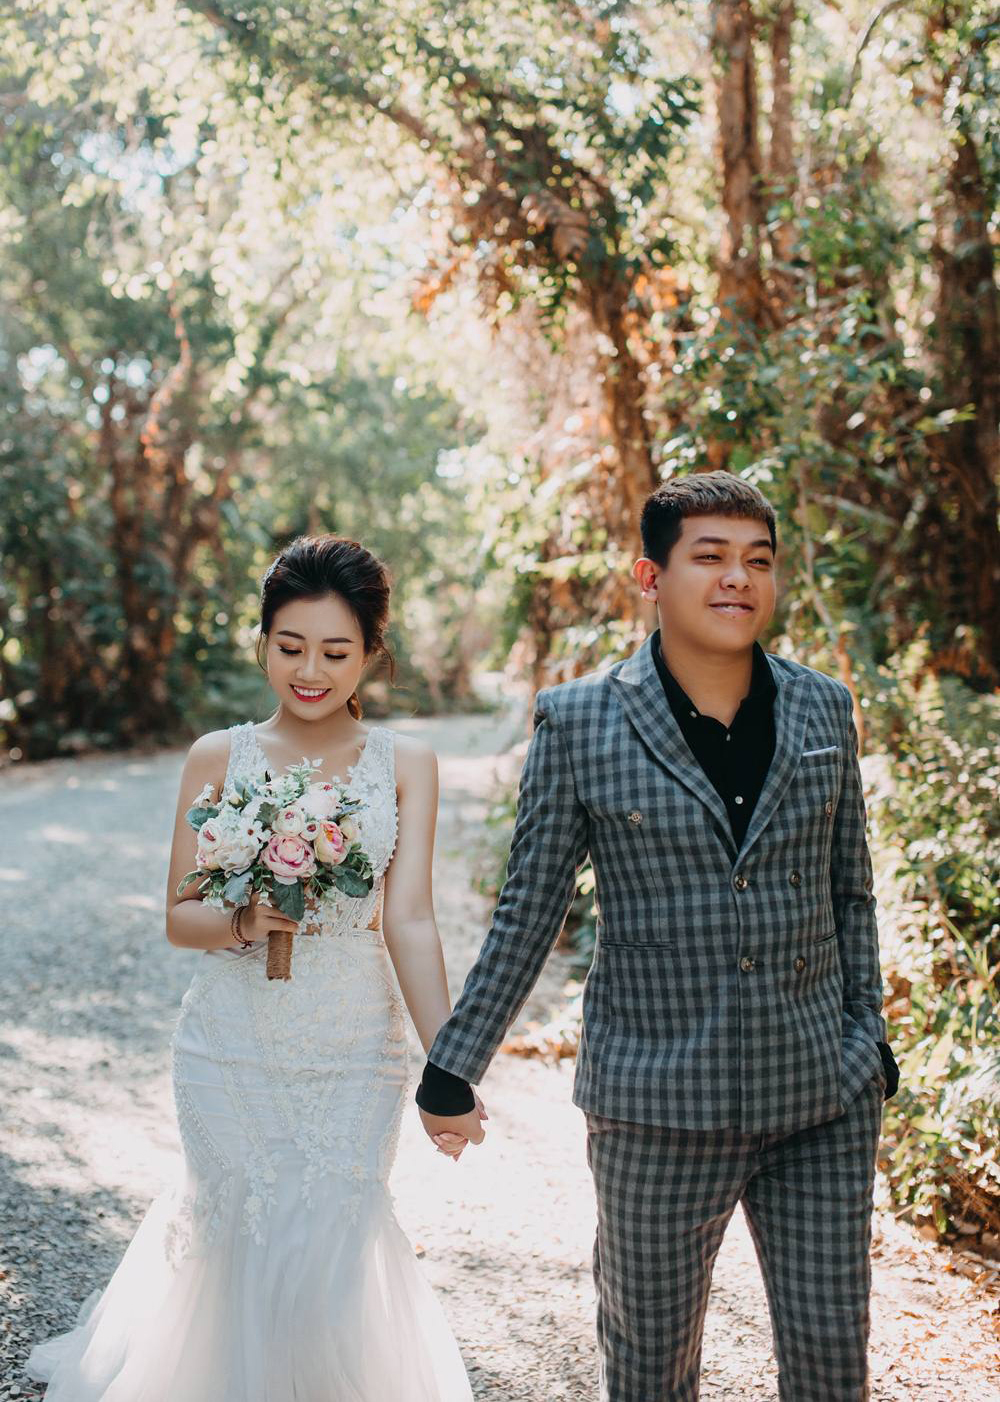 Muôn kiểu ảnh cưới của danh hài Việt: Người lãng mạn, người bá đạo hết sức - Tin sao Viet - Tin tuc sao Viet - Scandal sao Viet - Tin tuc cua Sao - Tin cua Sao